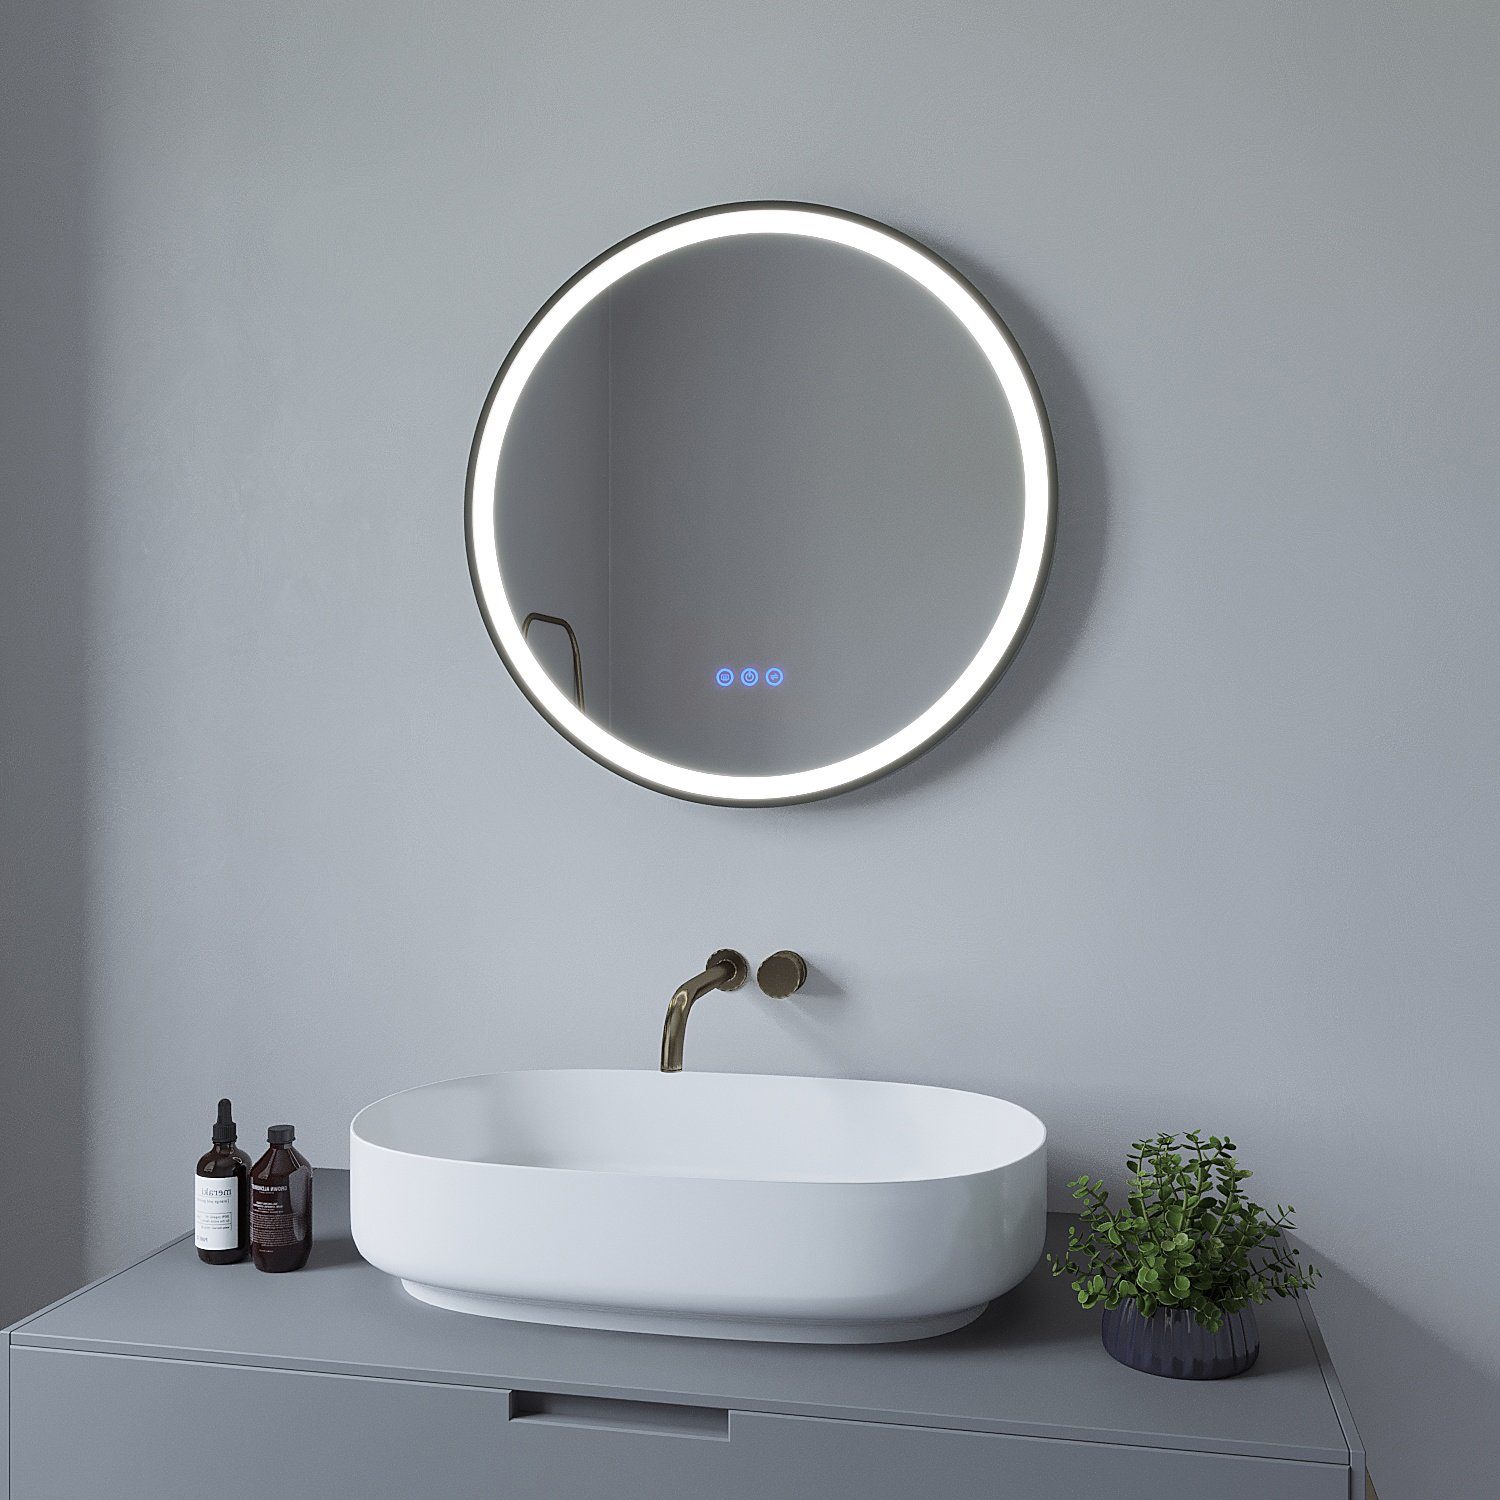 AQUABATOS Wandspiegel Badspiegel Badezimmerspiegel Led Spiegel Bad rund mit Beleuchtung, schwarz,Touch,Kaltweiß,Neutralweiß,Warmweiß,Anti-Beschlag